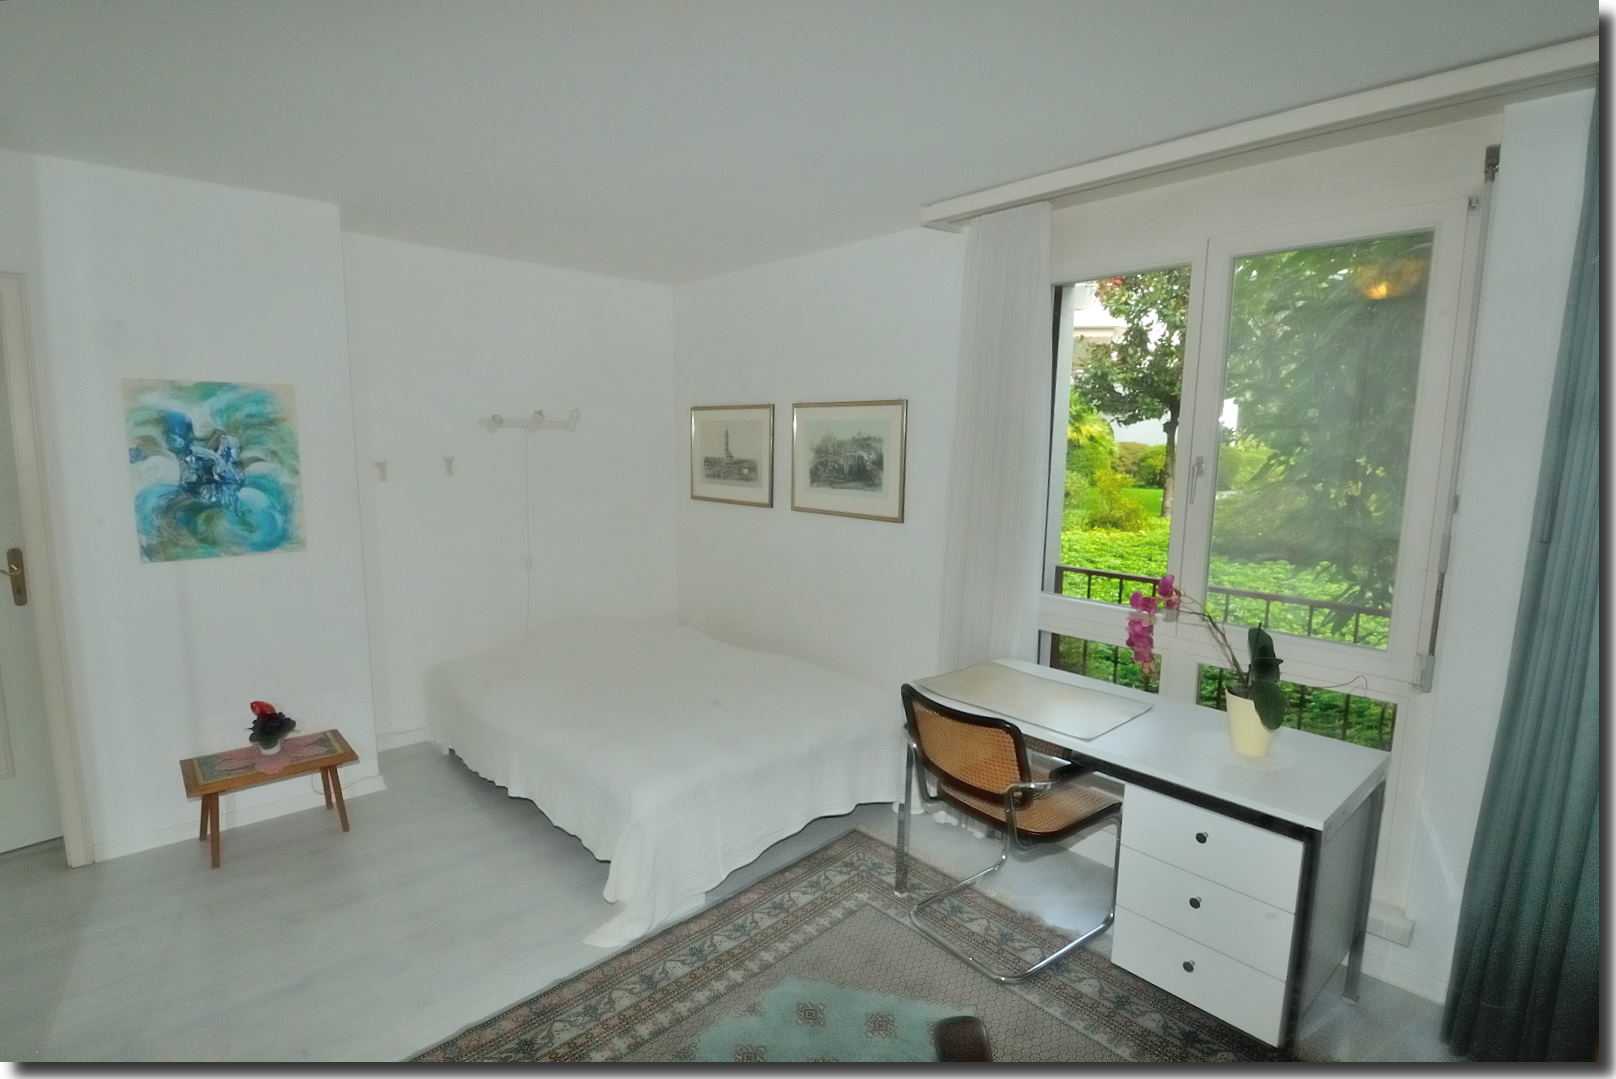 Residenza Al Parco - via al Lido 26e - Ascona [ Schlafzimmer ]